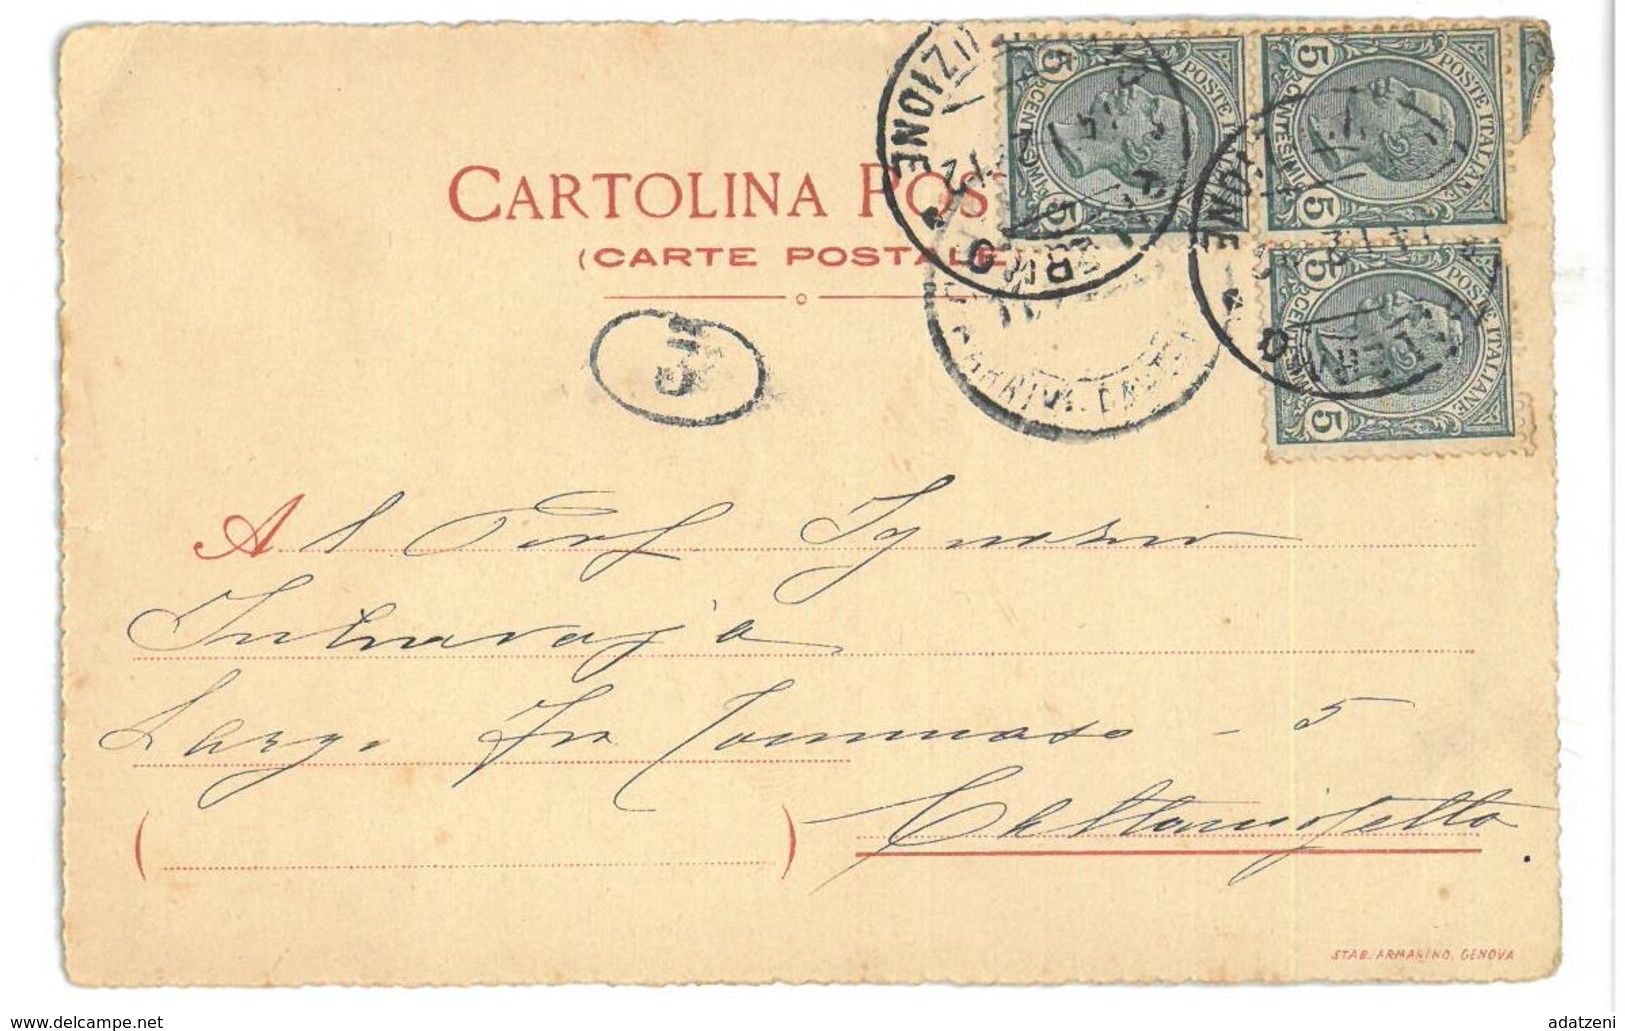 Cartolina Postale Pubblicità L’amarene Viaggiata 1912 Dimensioni Cm 9 X 14 Condizioni Come Da Scansione - Pubblicitari